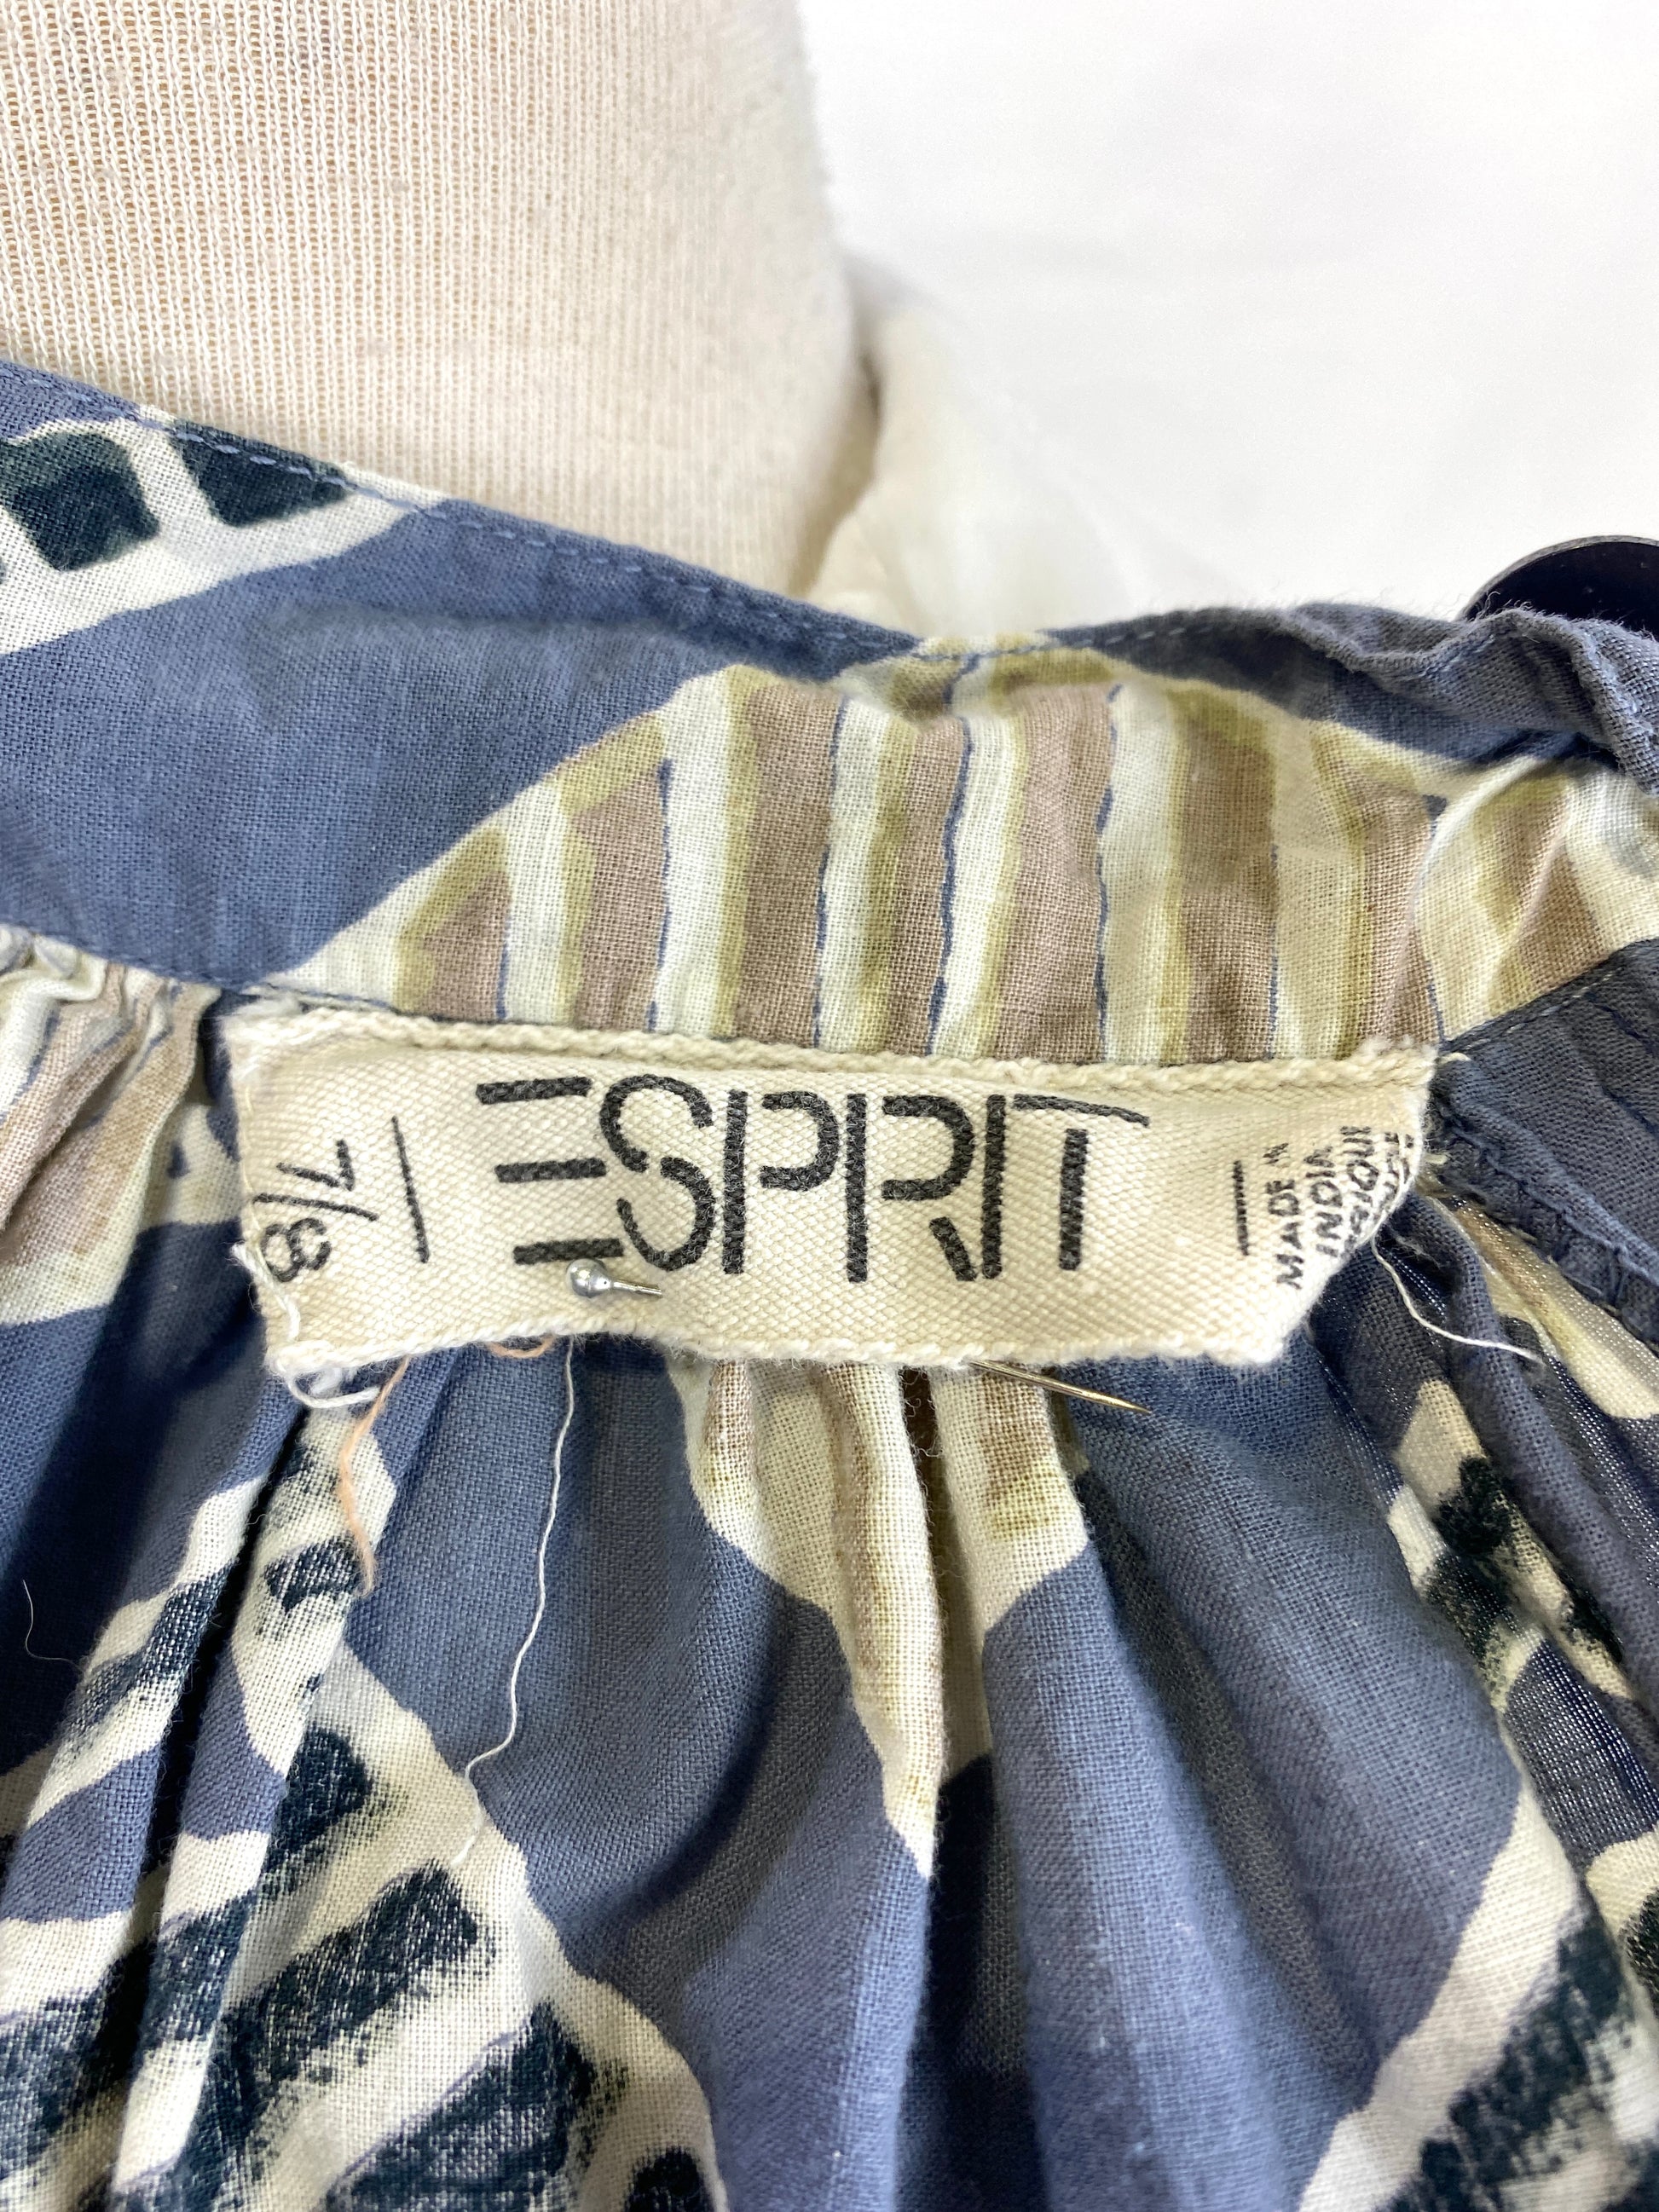 Esprit clothing label tag on 80s vintage skirt. Ian Drummond Vintage.